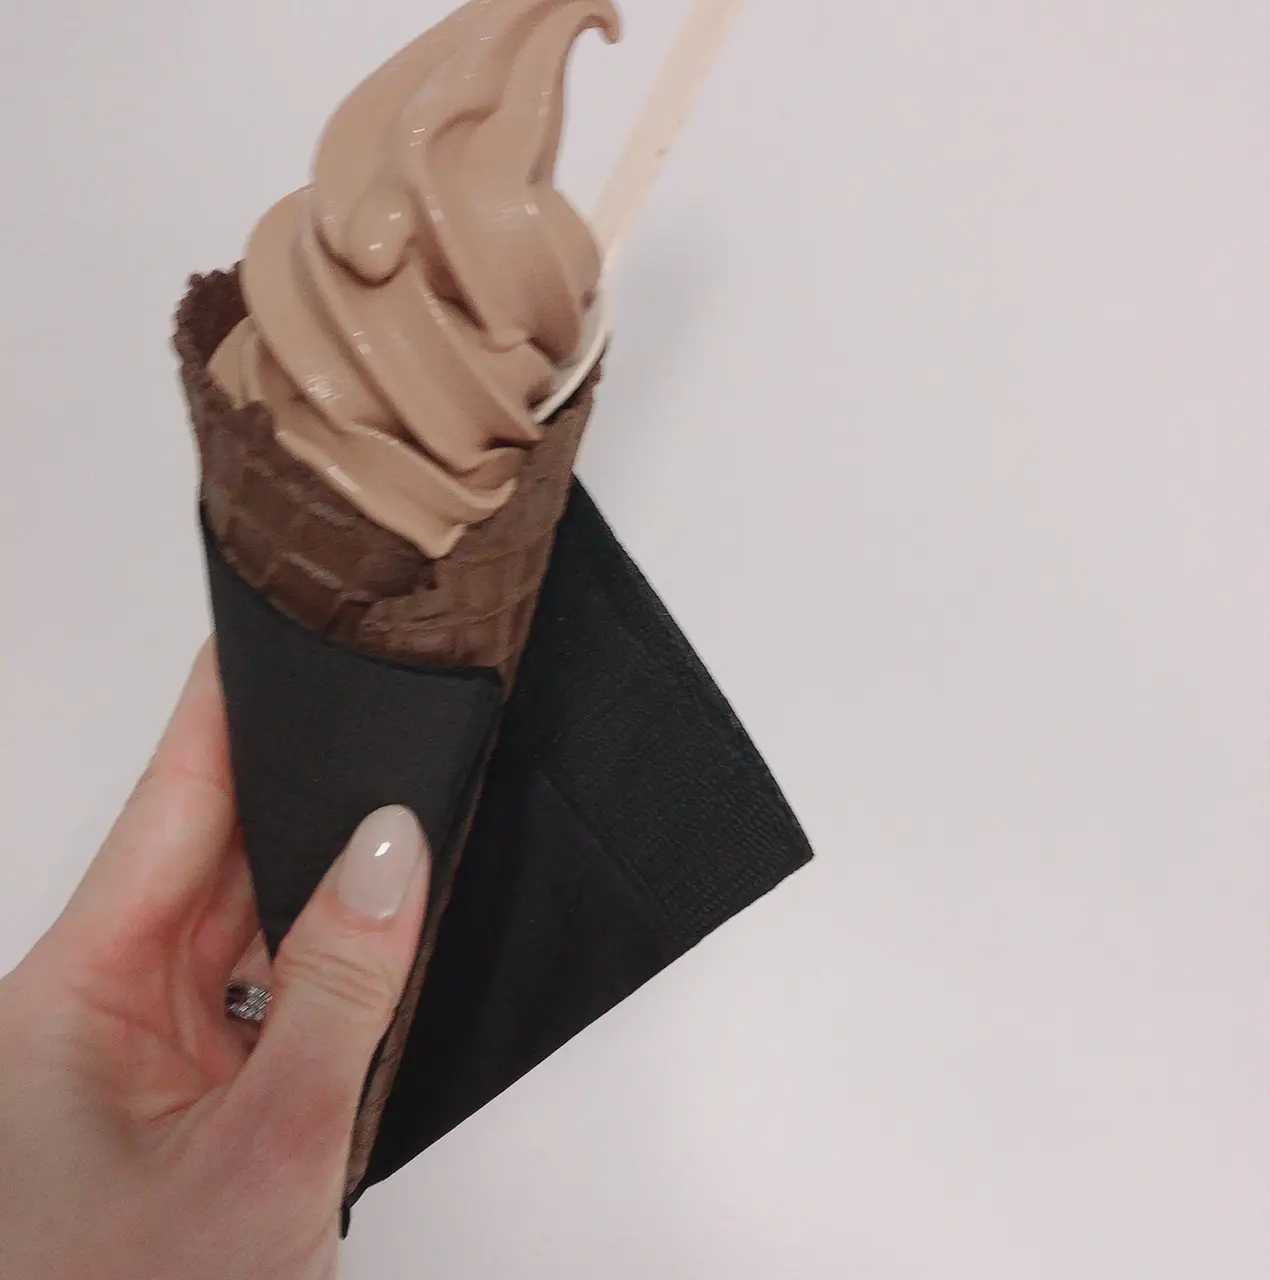 チョコレート　ソフトクリーム